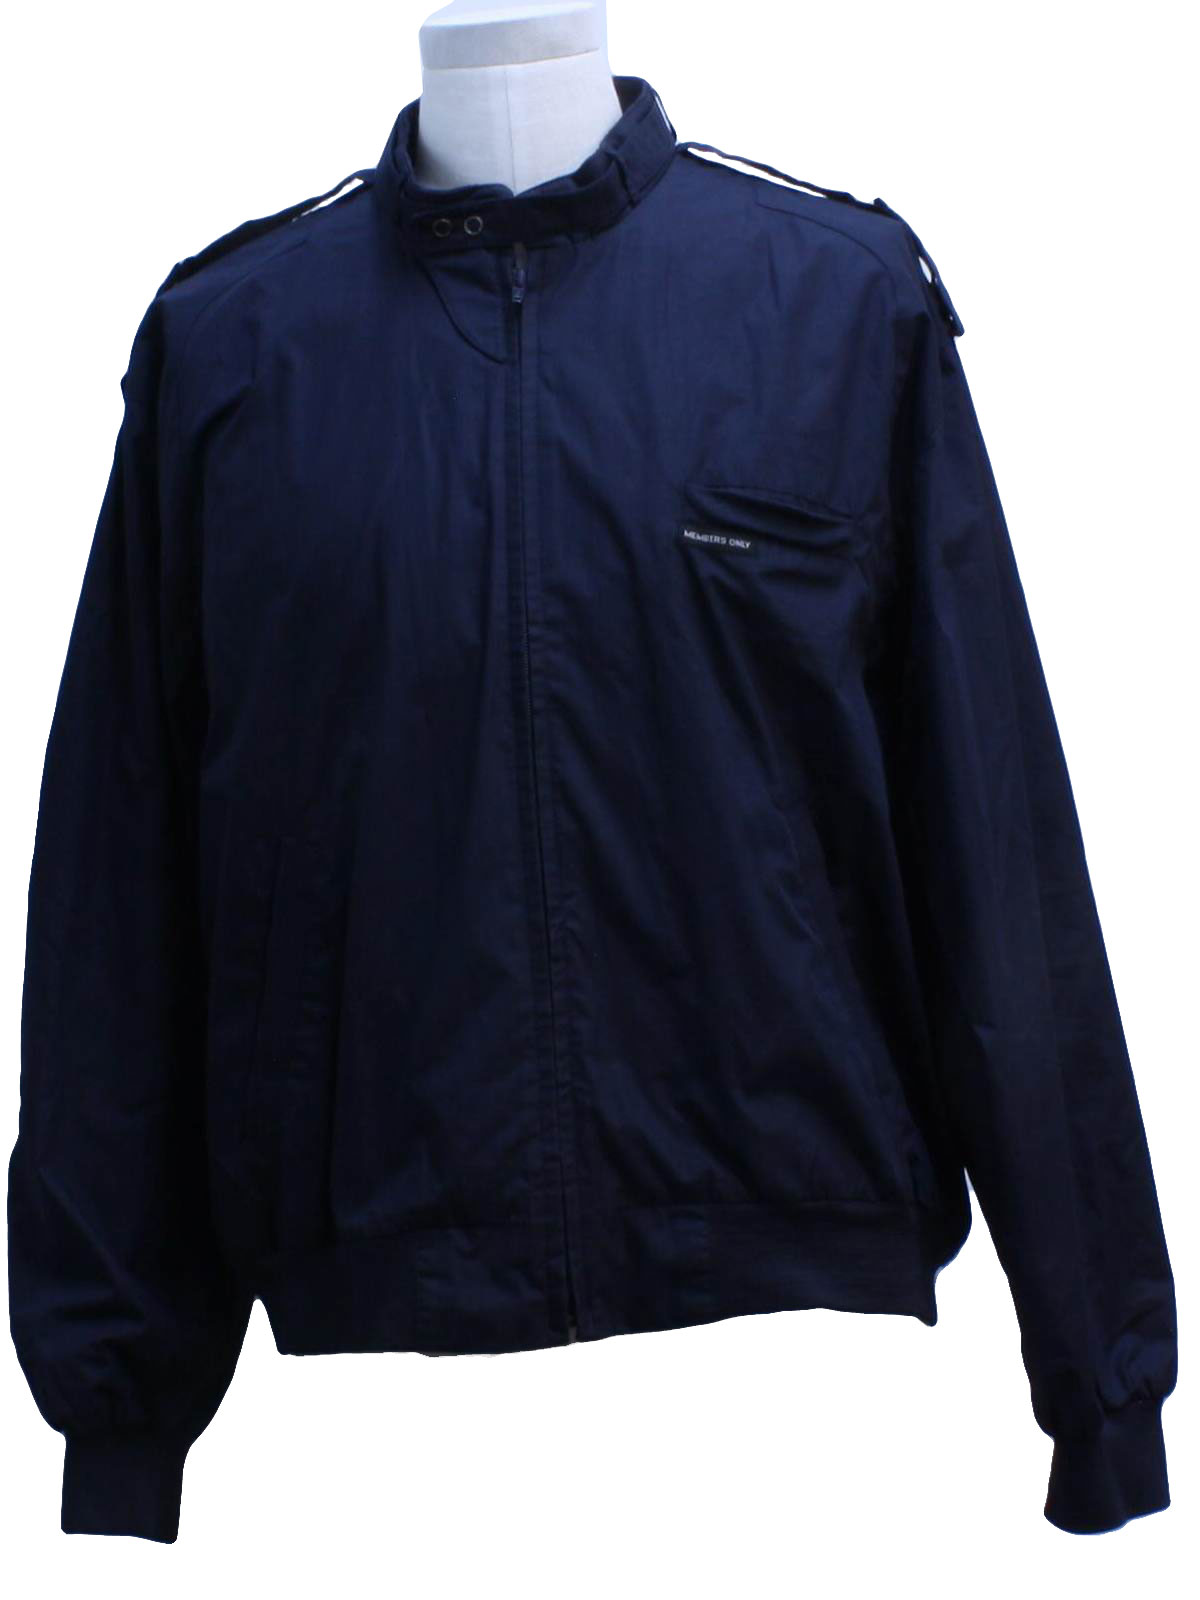 Eighties Vintage Jacket: 80s style -Members Only- Mens dark blue cotton ...